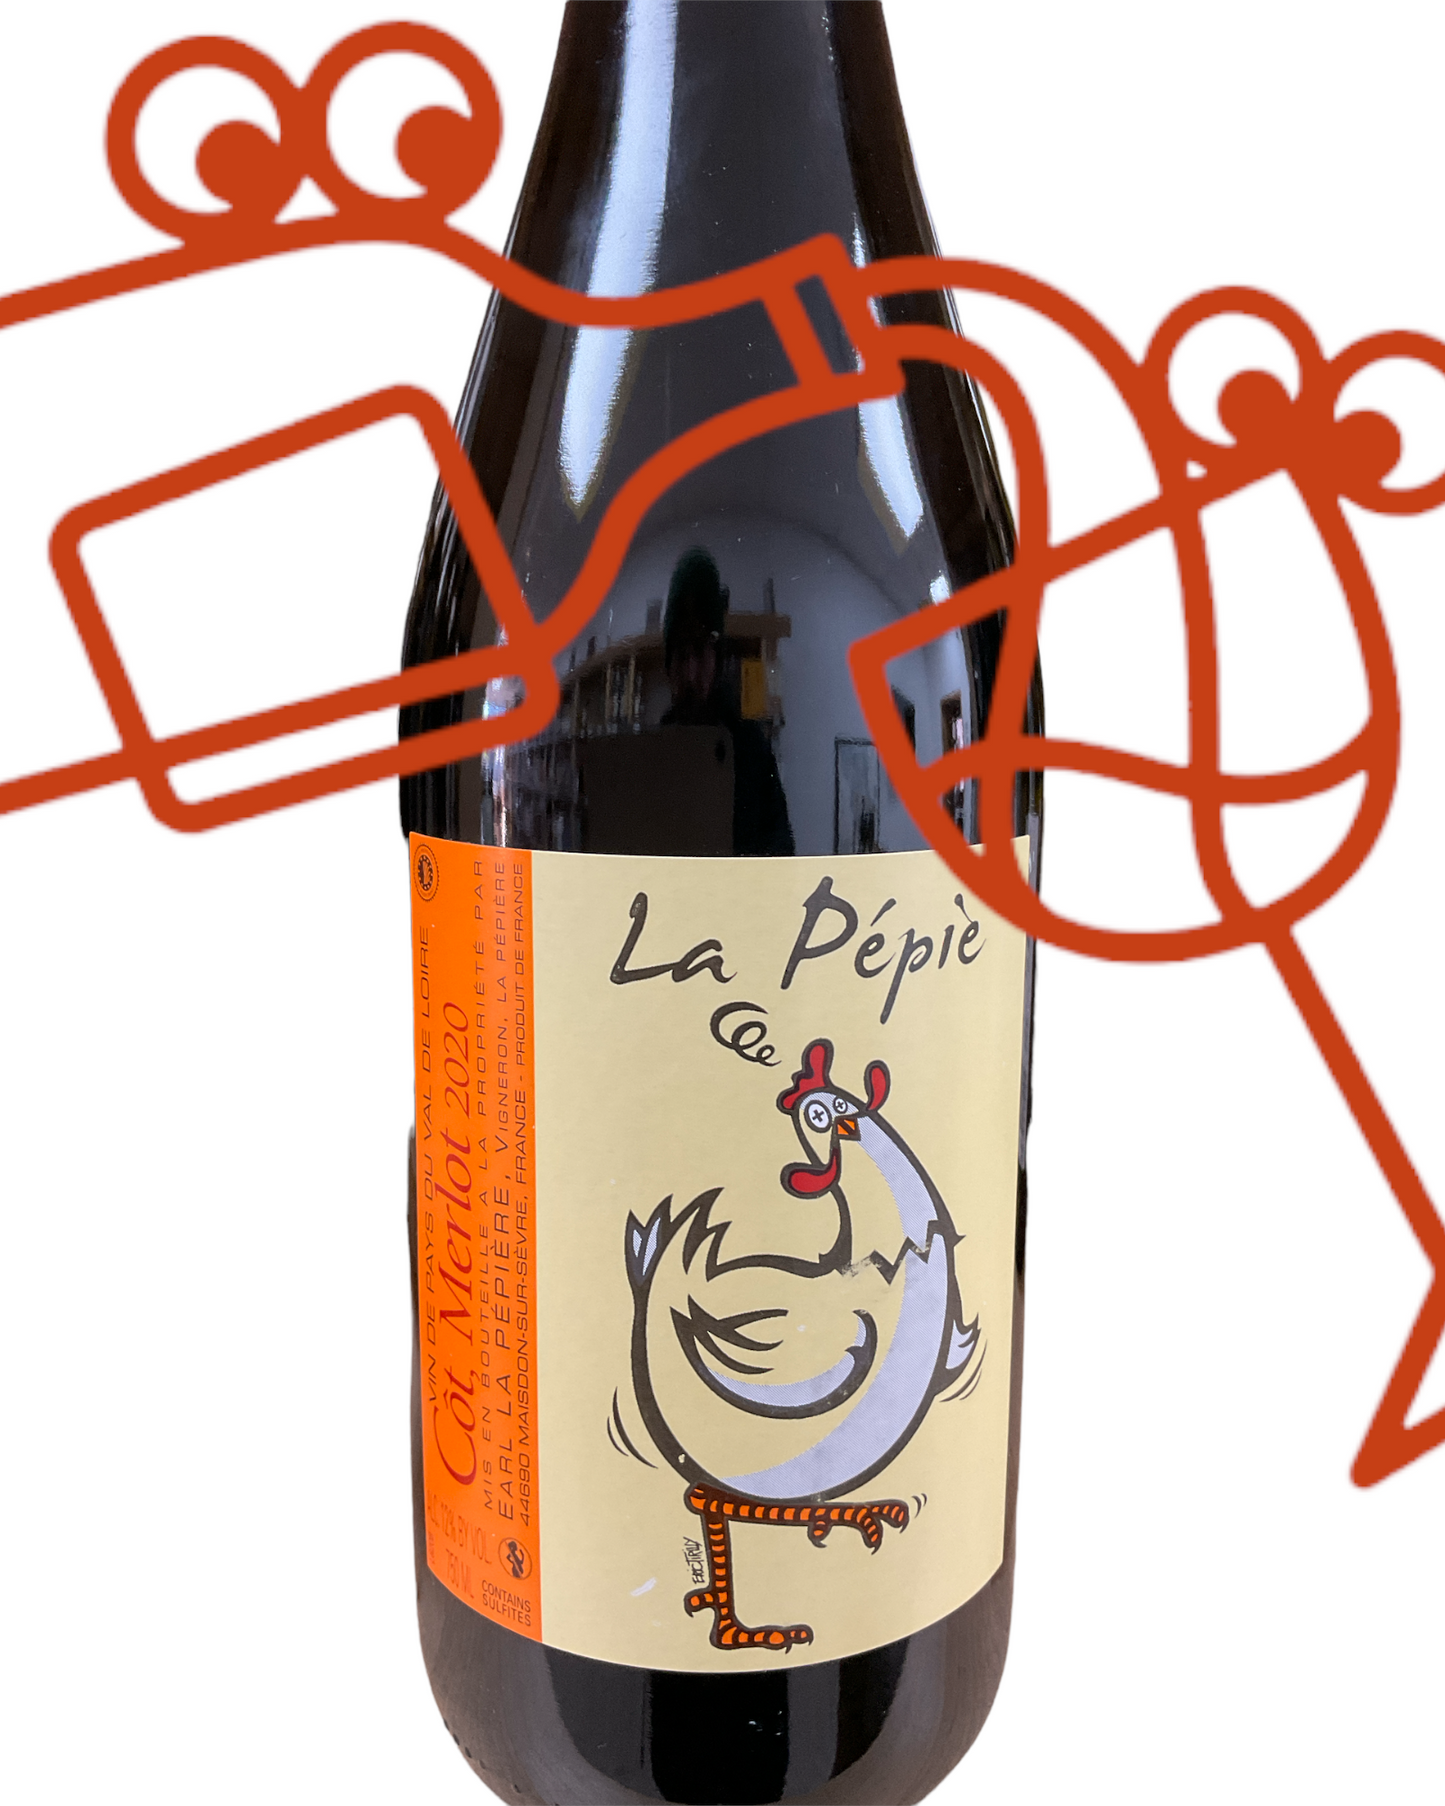 Domaine de la Pepiere 'La Pepie' Cot - Merlot 2020 Loire Valley, France - Williston Park Wines & Spirits